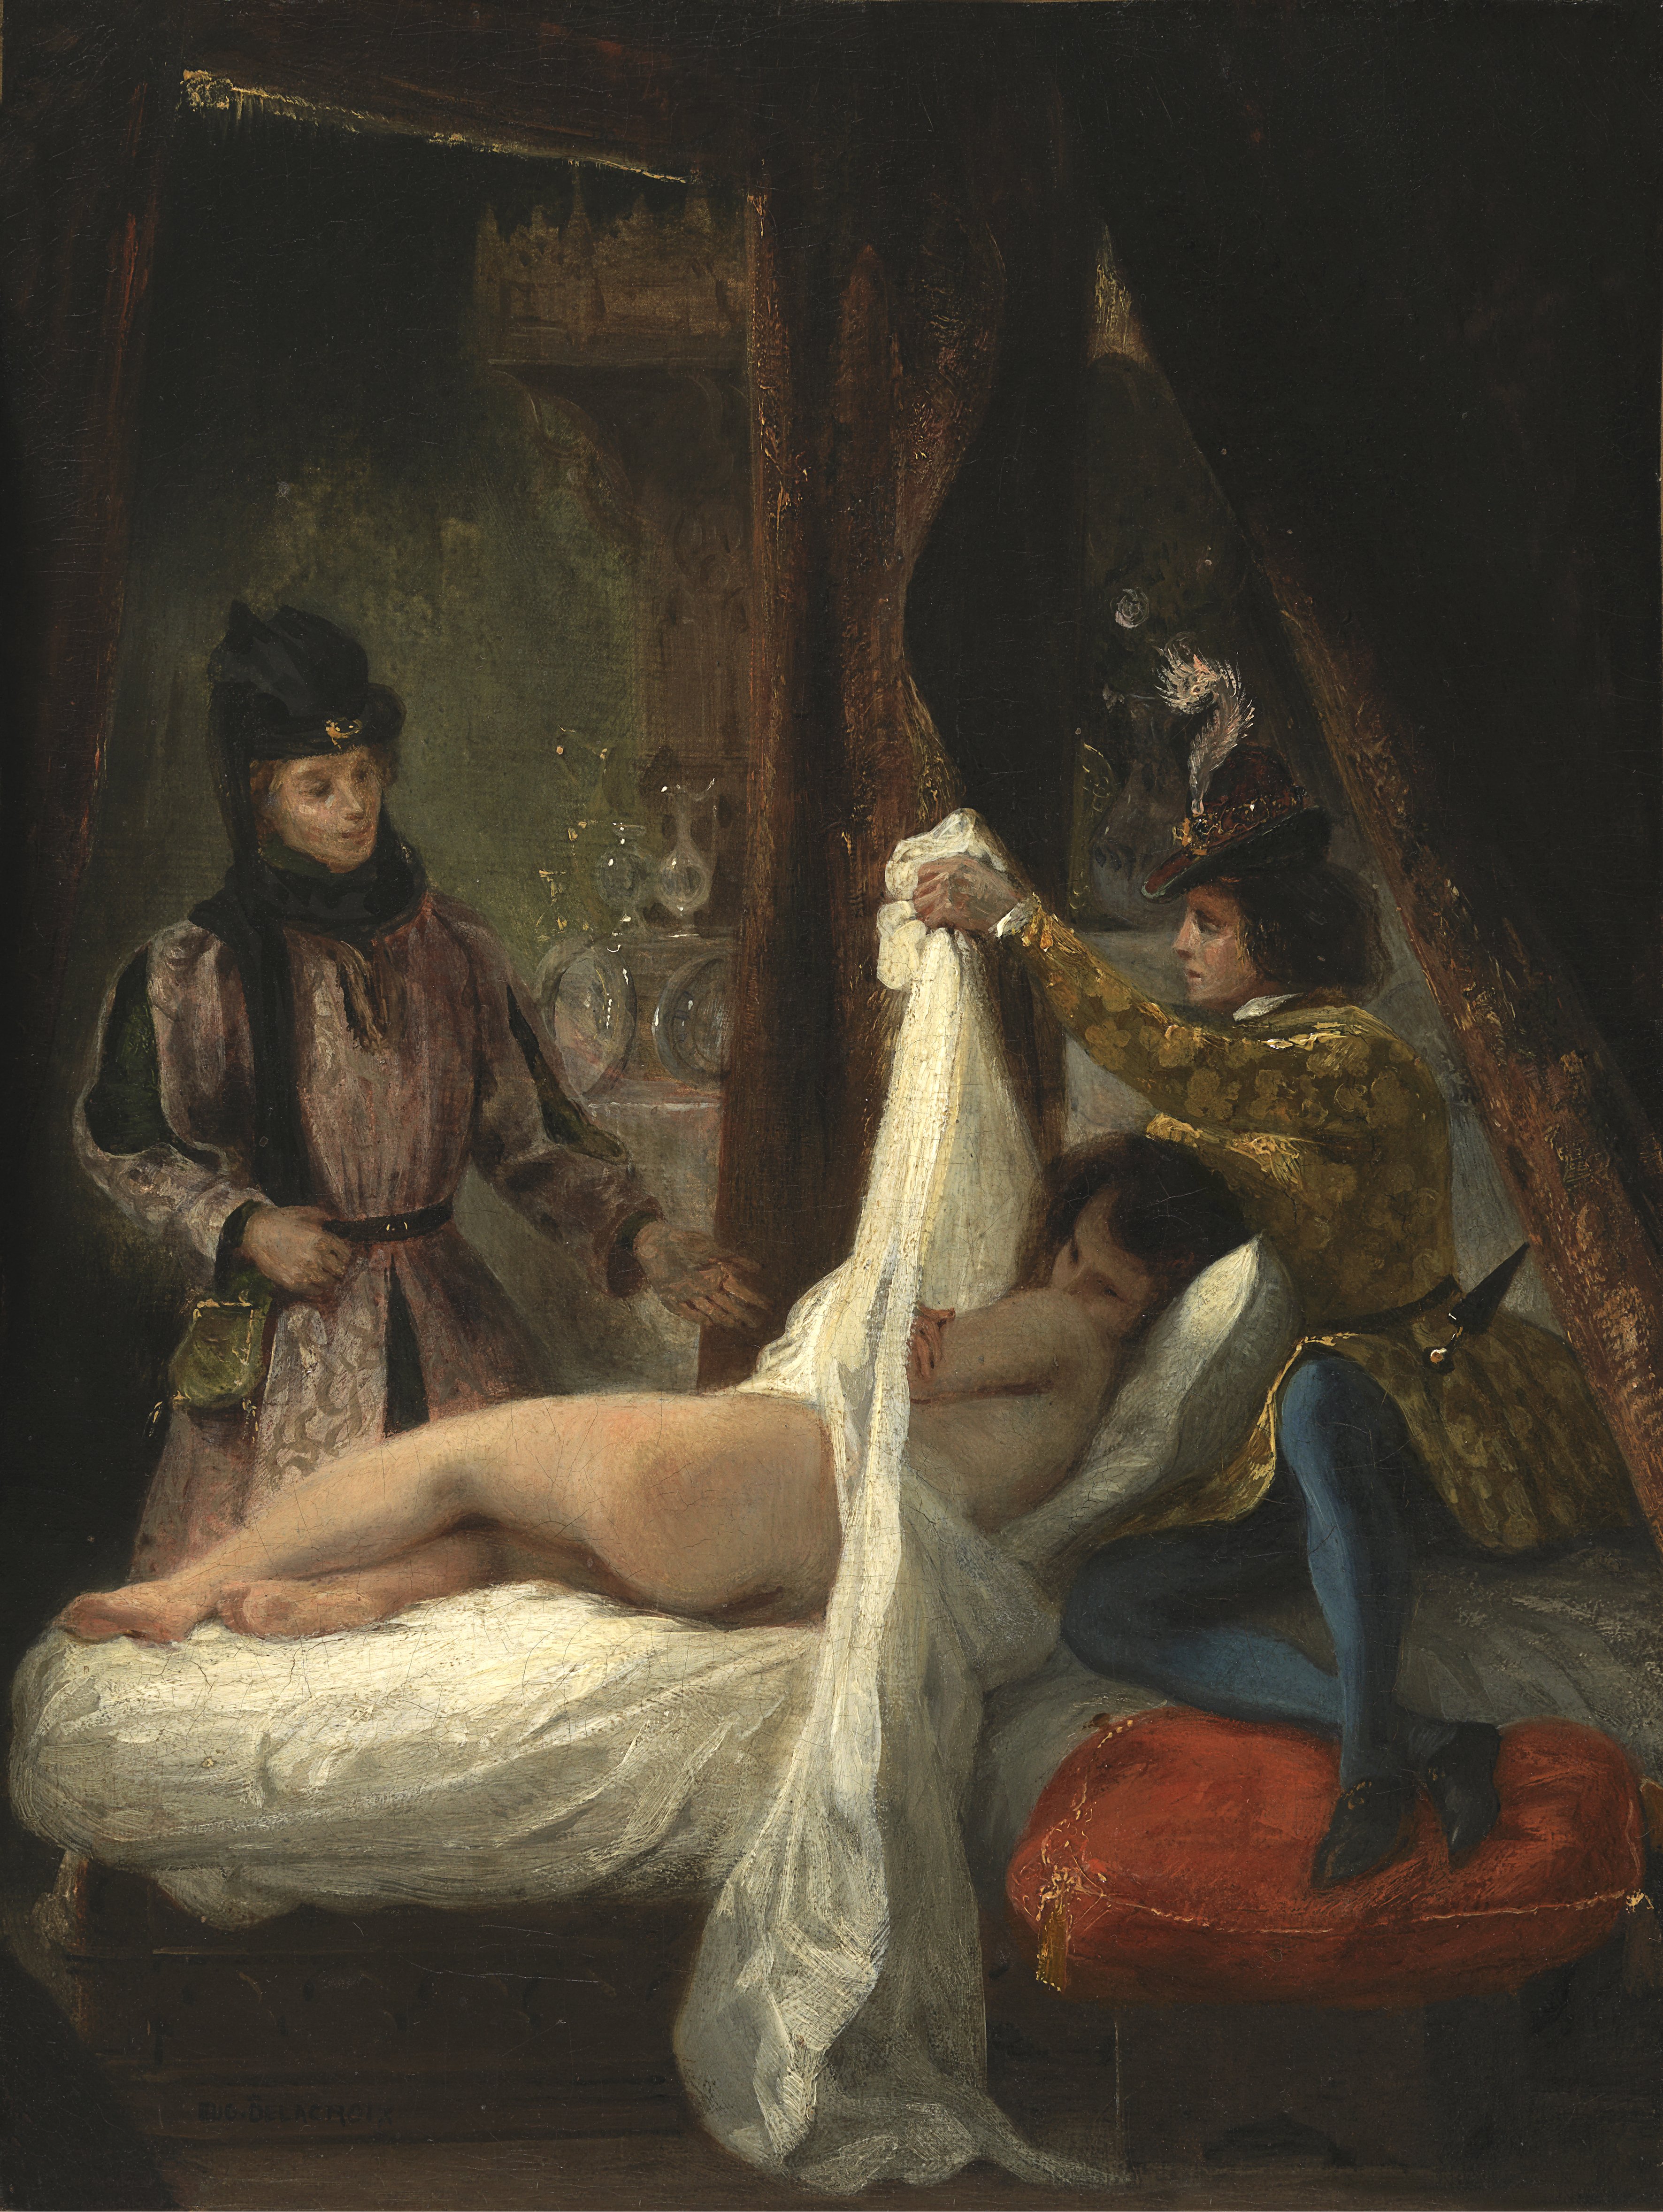 El duque de Orleans mostrando a su amante. Eugène Delacroix